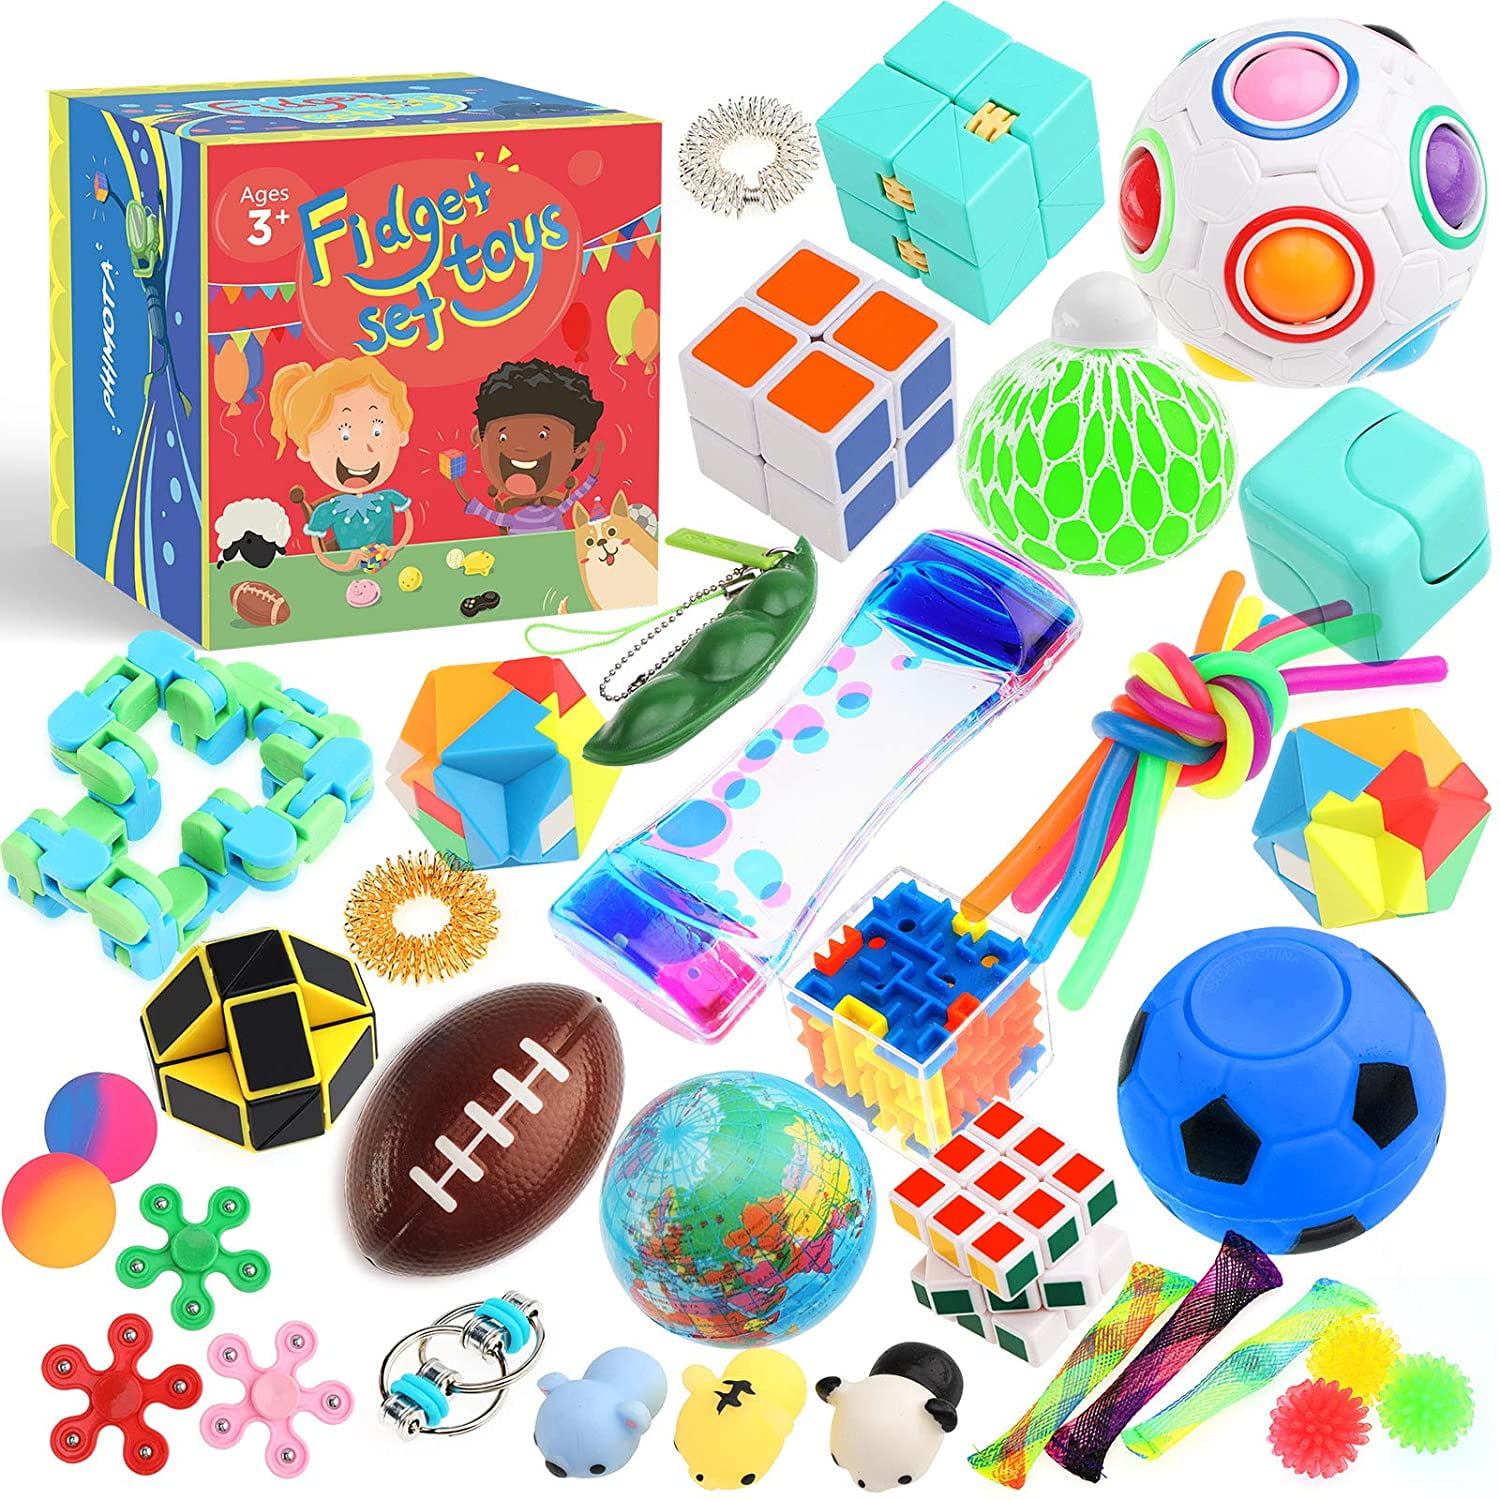 Details about   1-28x Fidget Toys Set Sensory Tools Bundle Stress Relief Hand Kids Adults Toys 